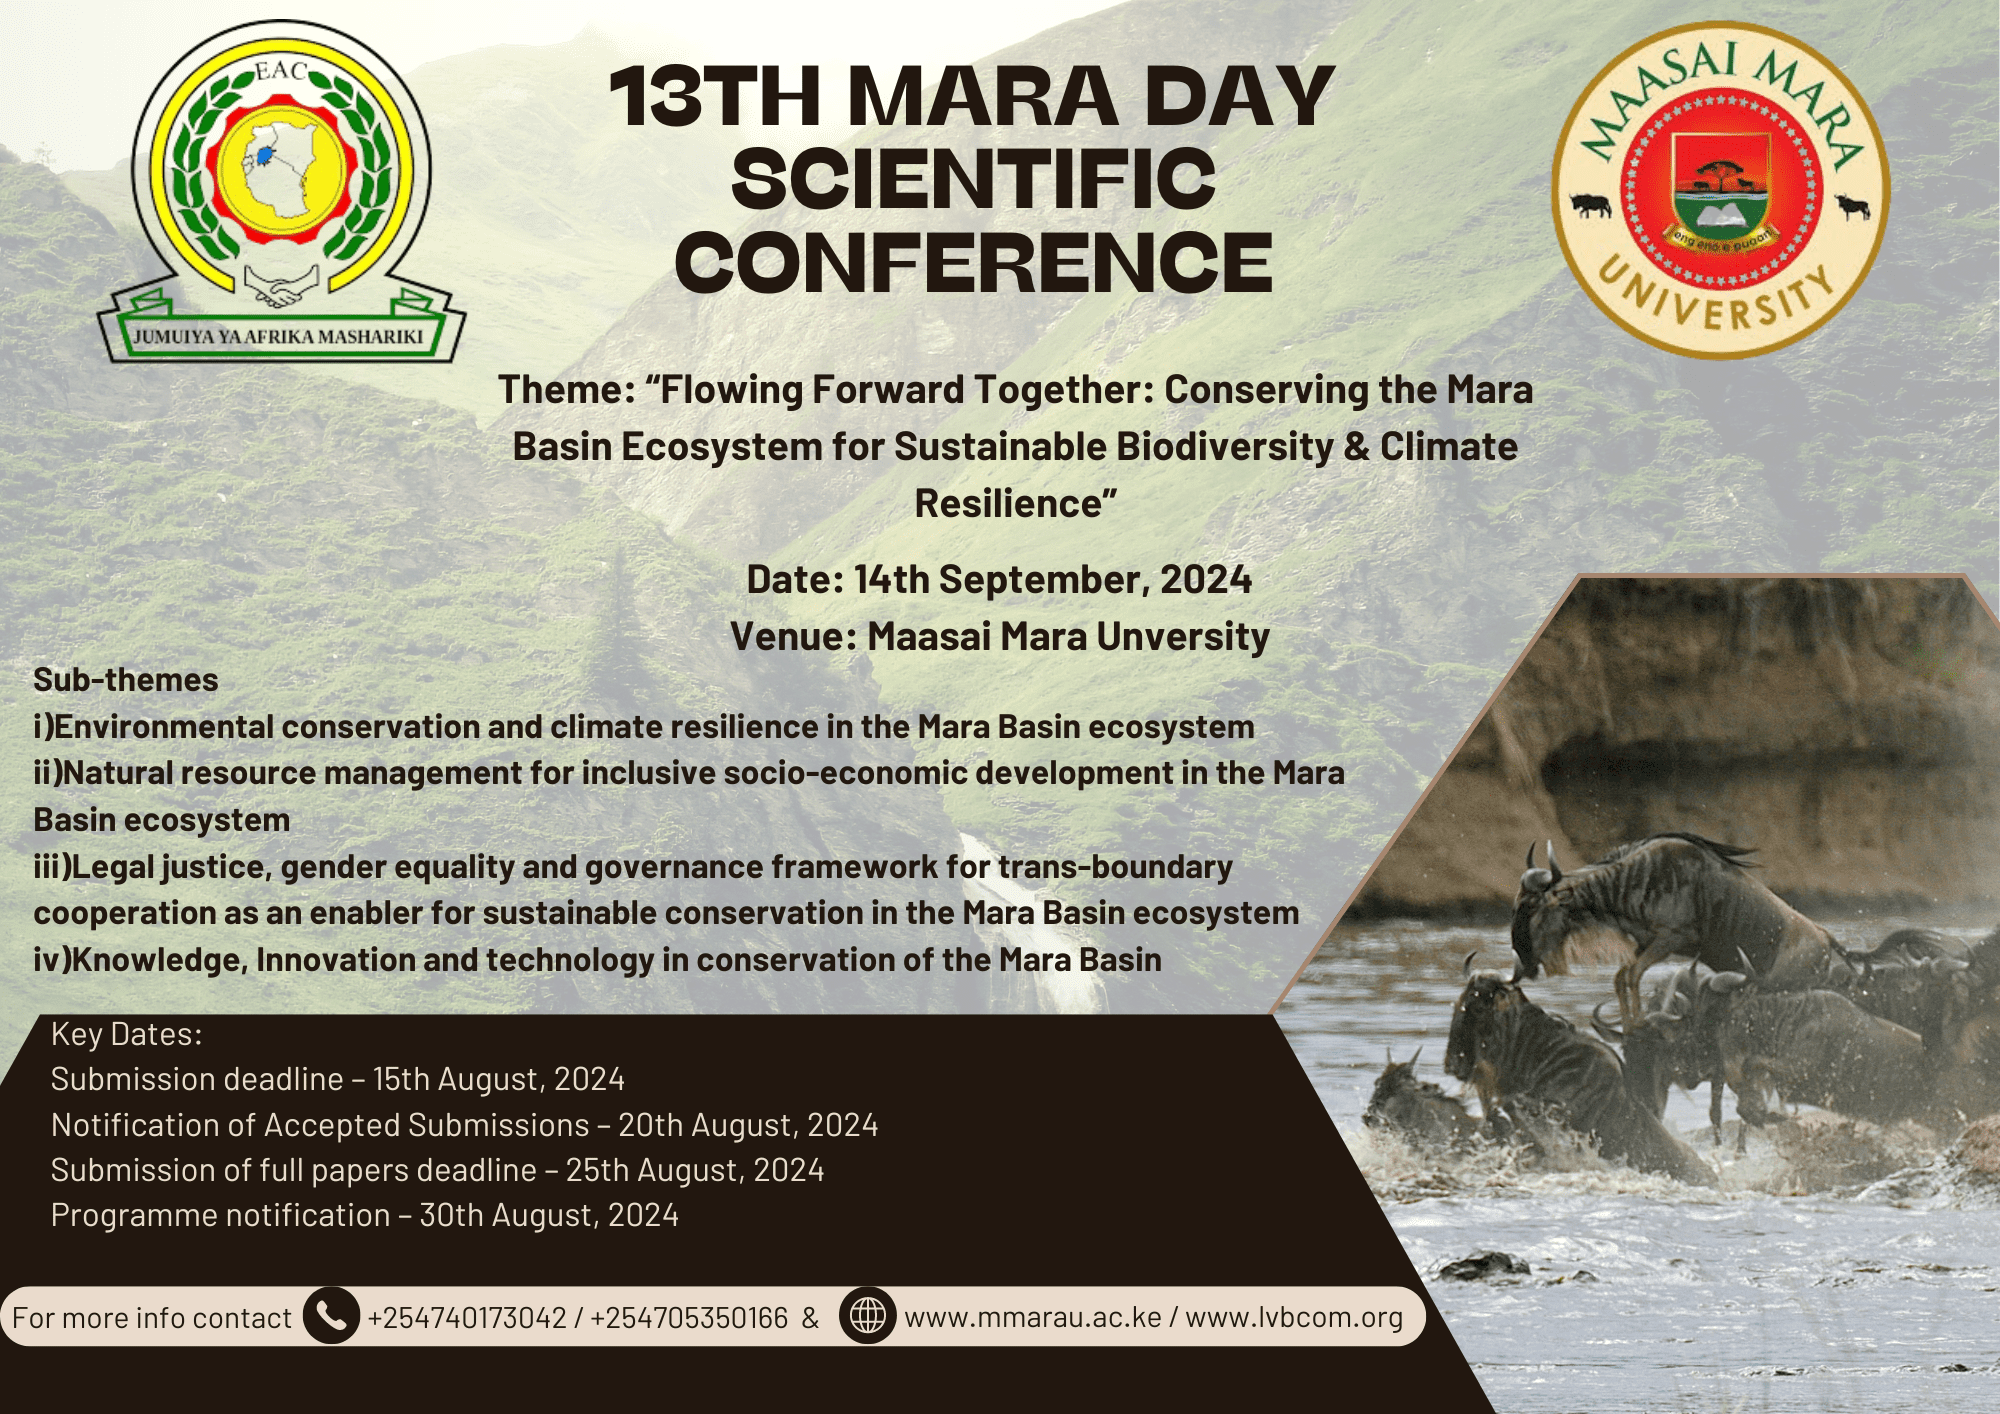 13th mara day scientific conference